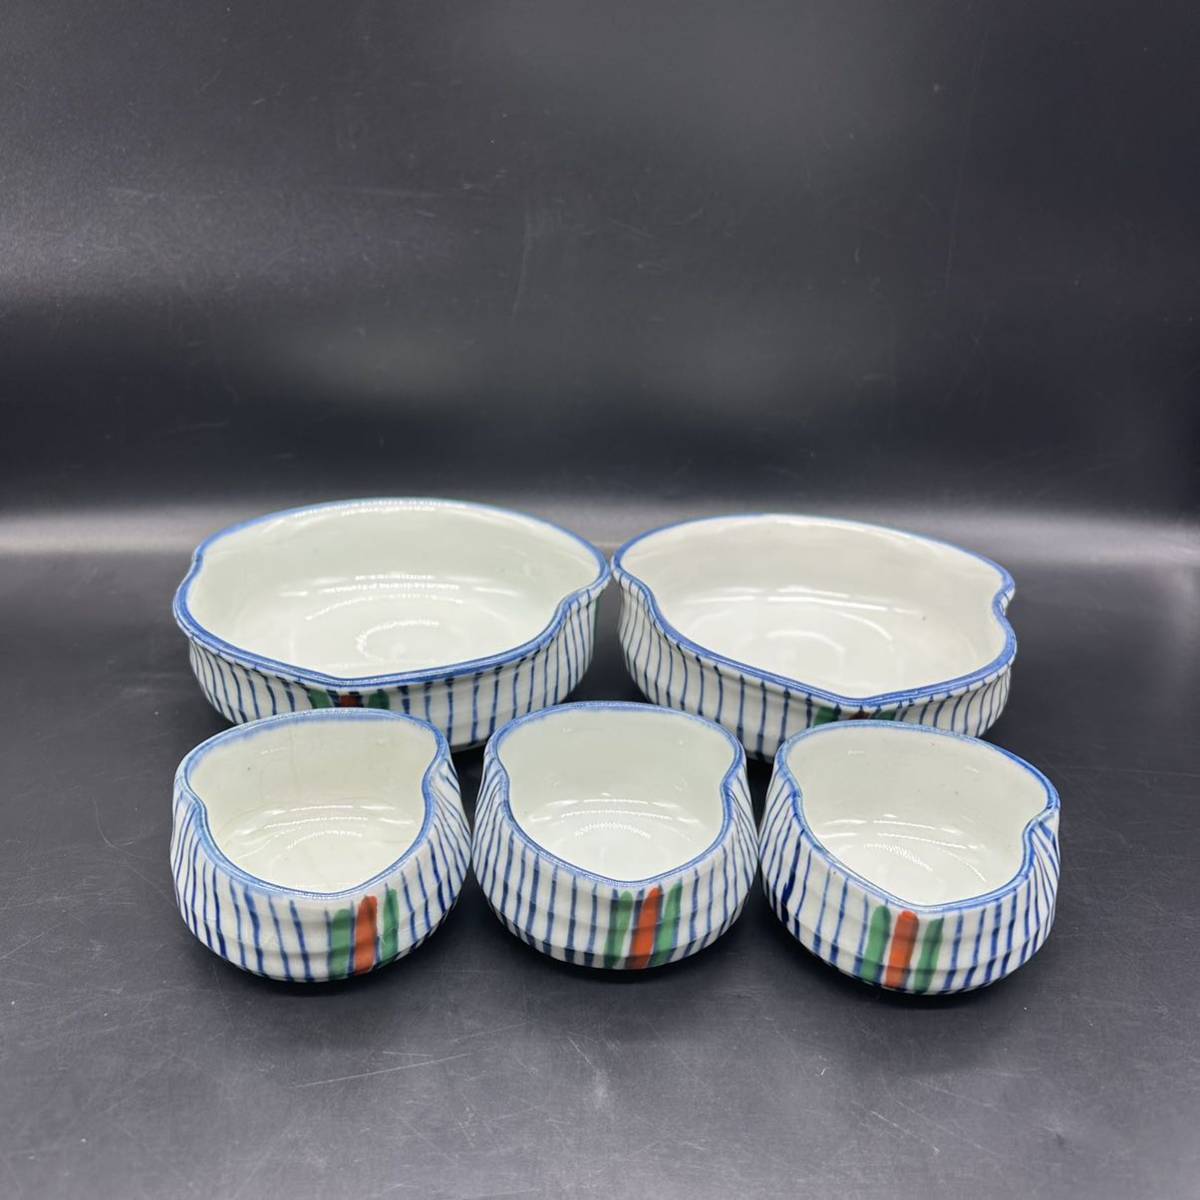 Набор небольших мисок в форме тыквы из 5 японских столовых приборов Tokusa, окрашенная вручную тарелка, керамическая маленькая миска T16-9, Японская посуда, горшок, малая чаша